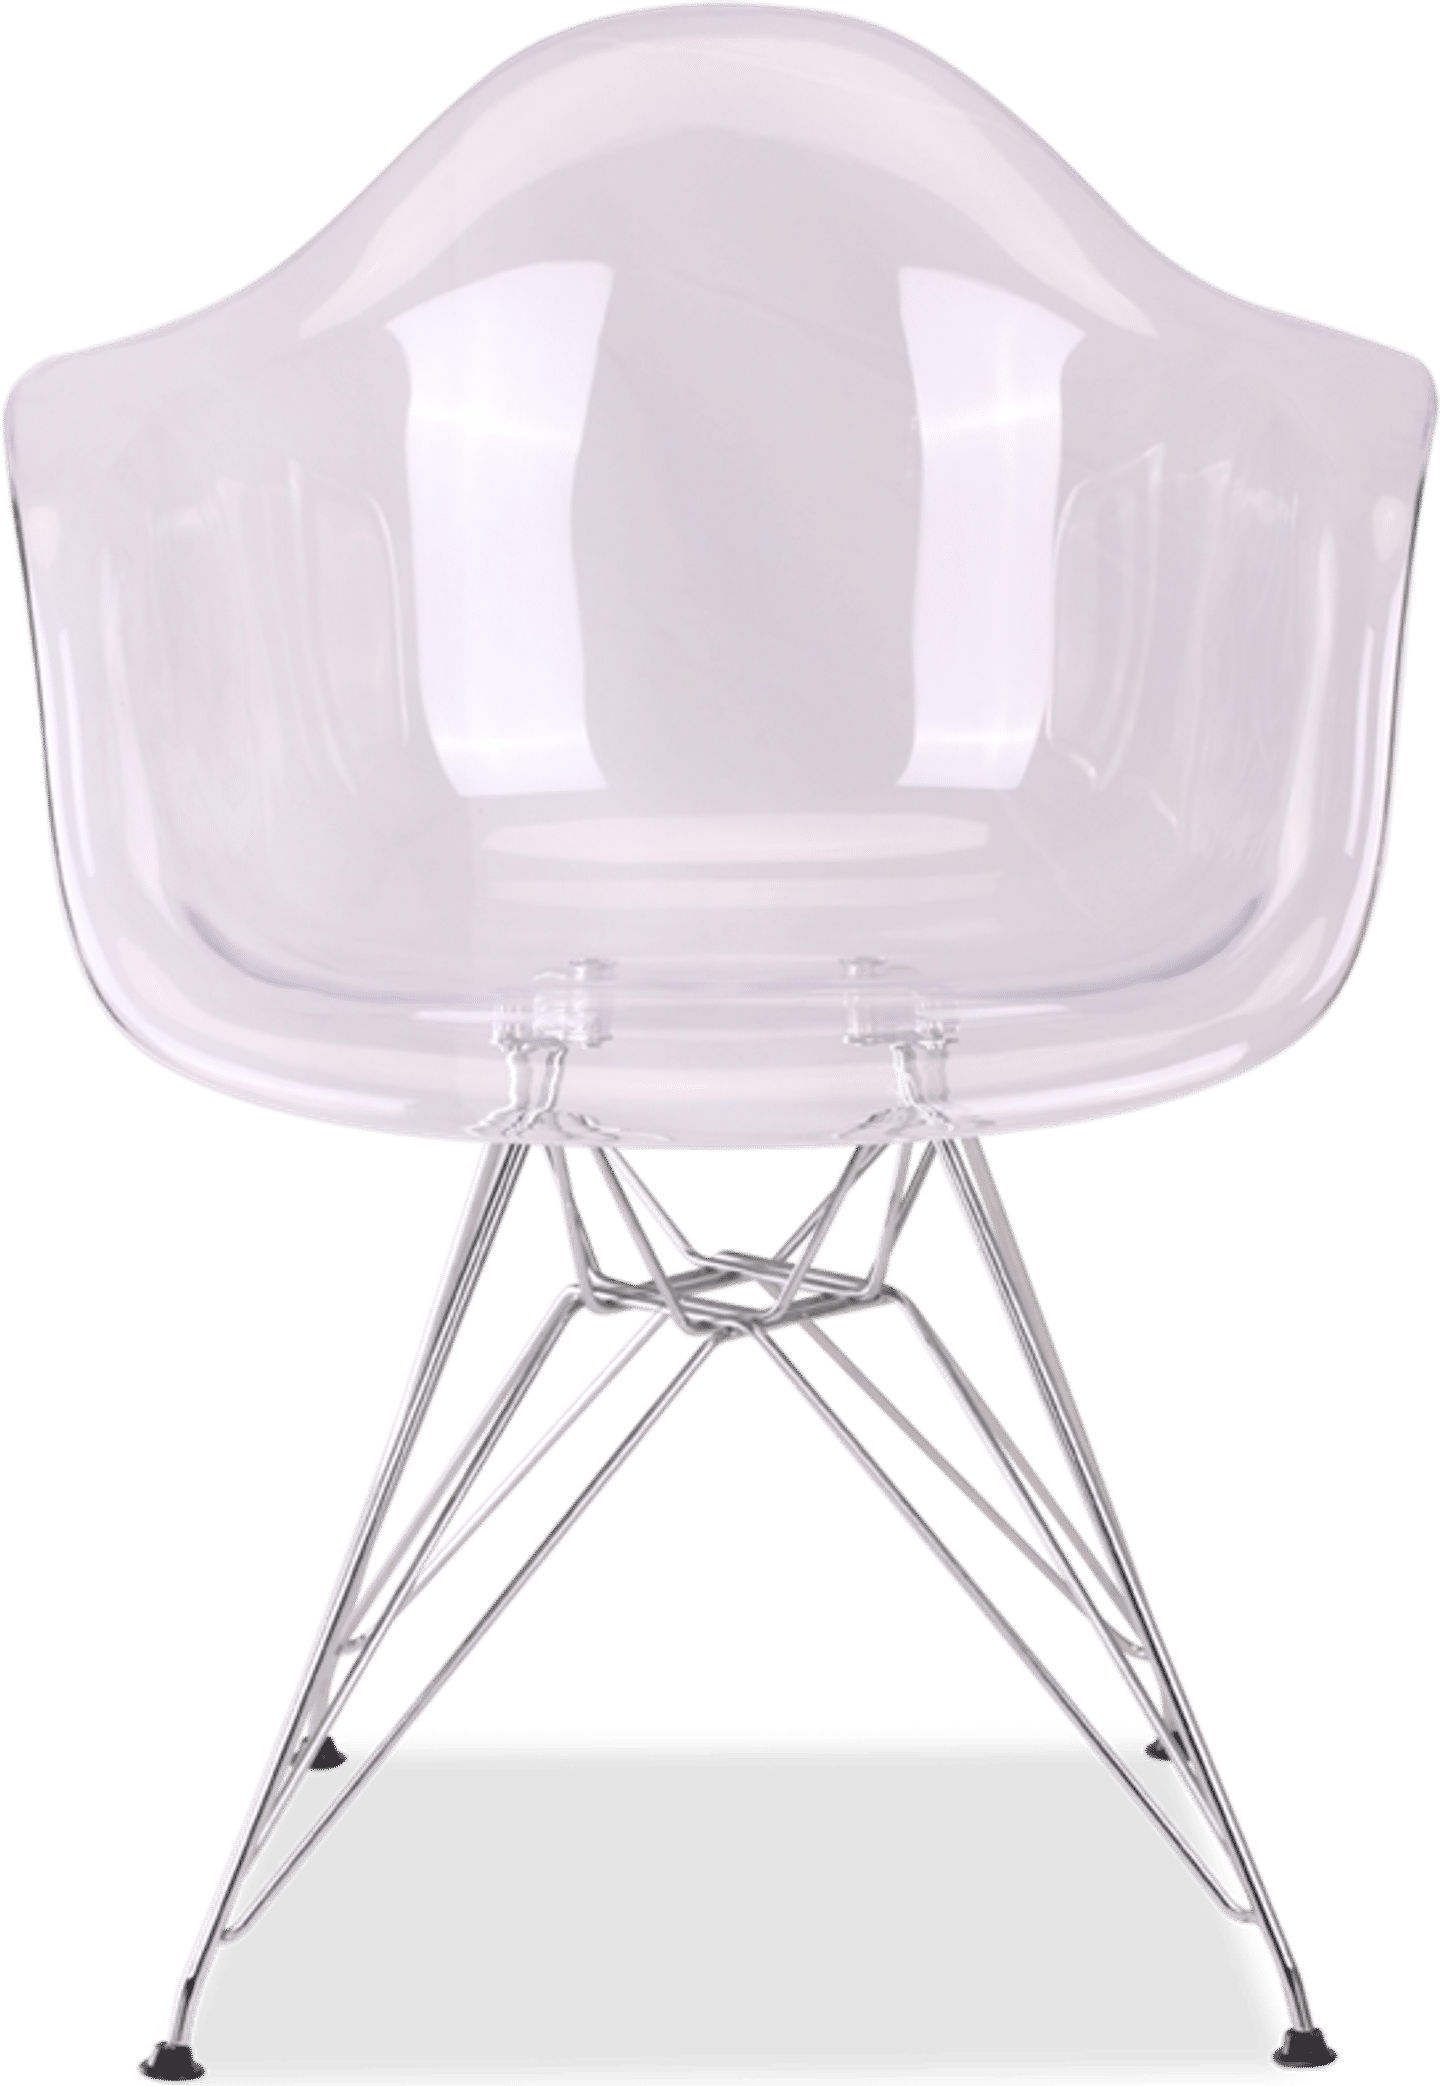 Gjennomsiktig stol i DAR-stil Clear image.